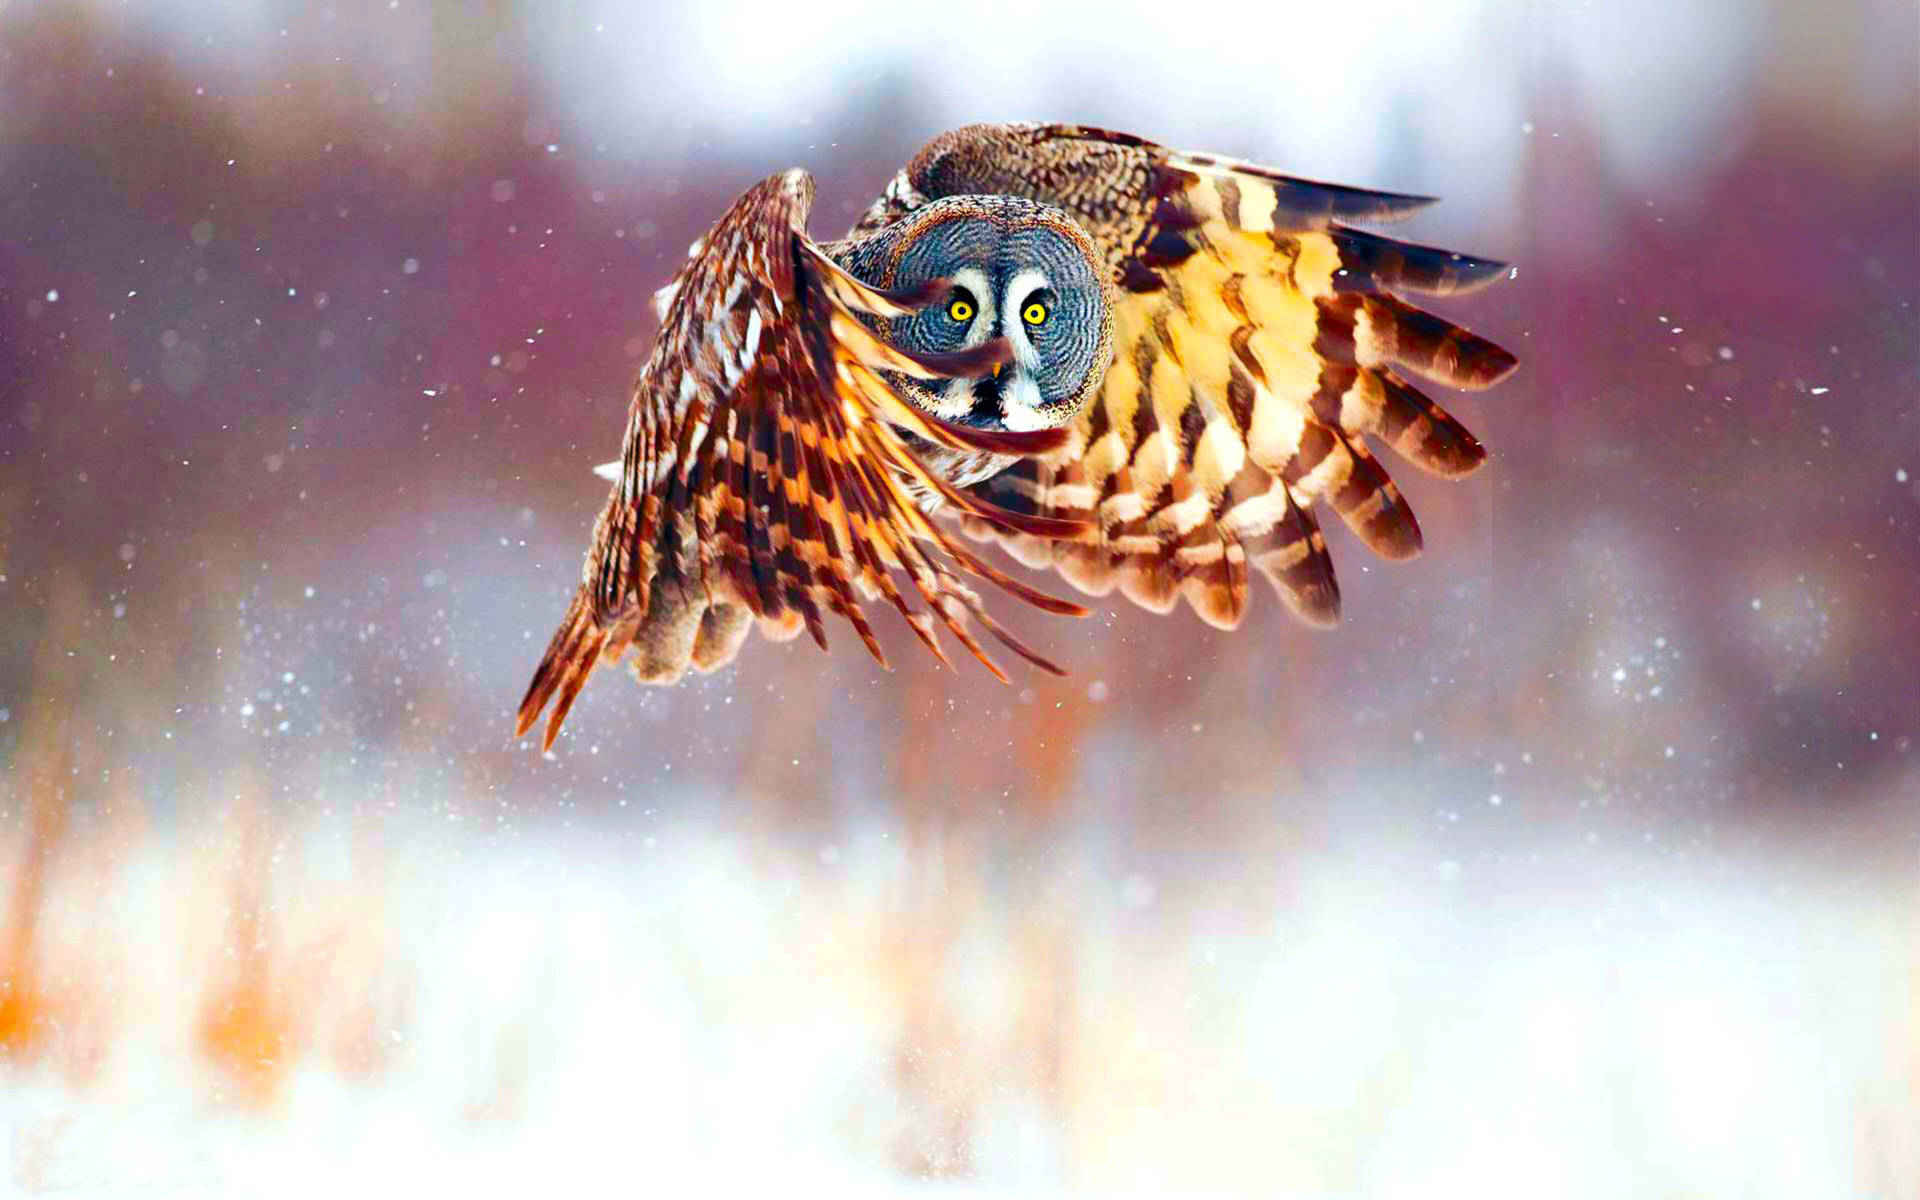 Cute Owl In Flight Background